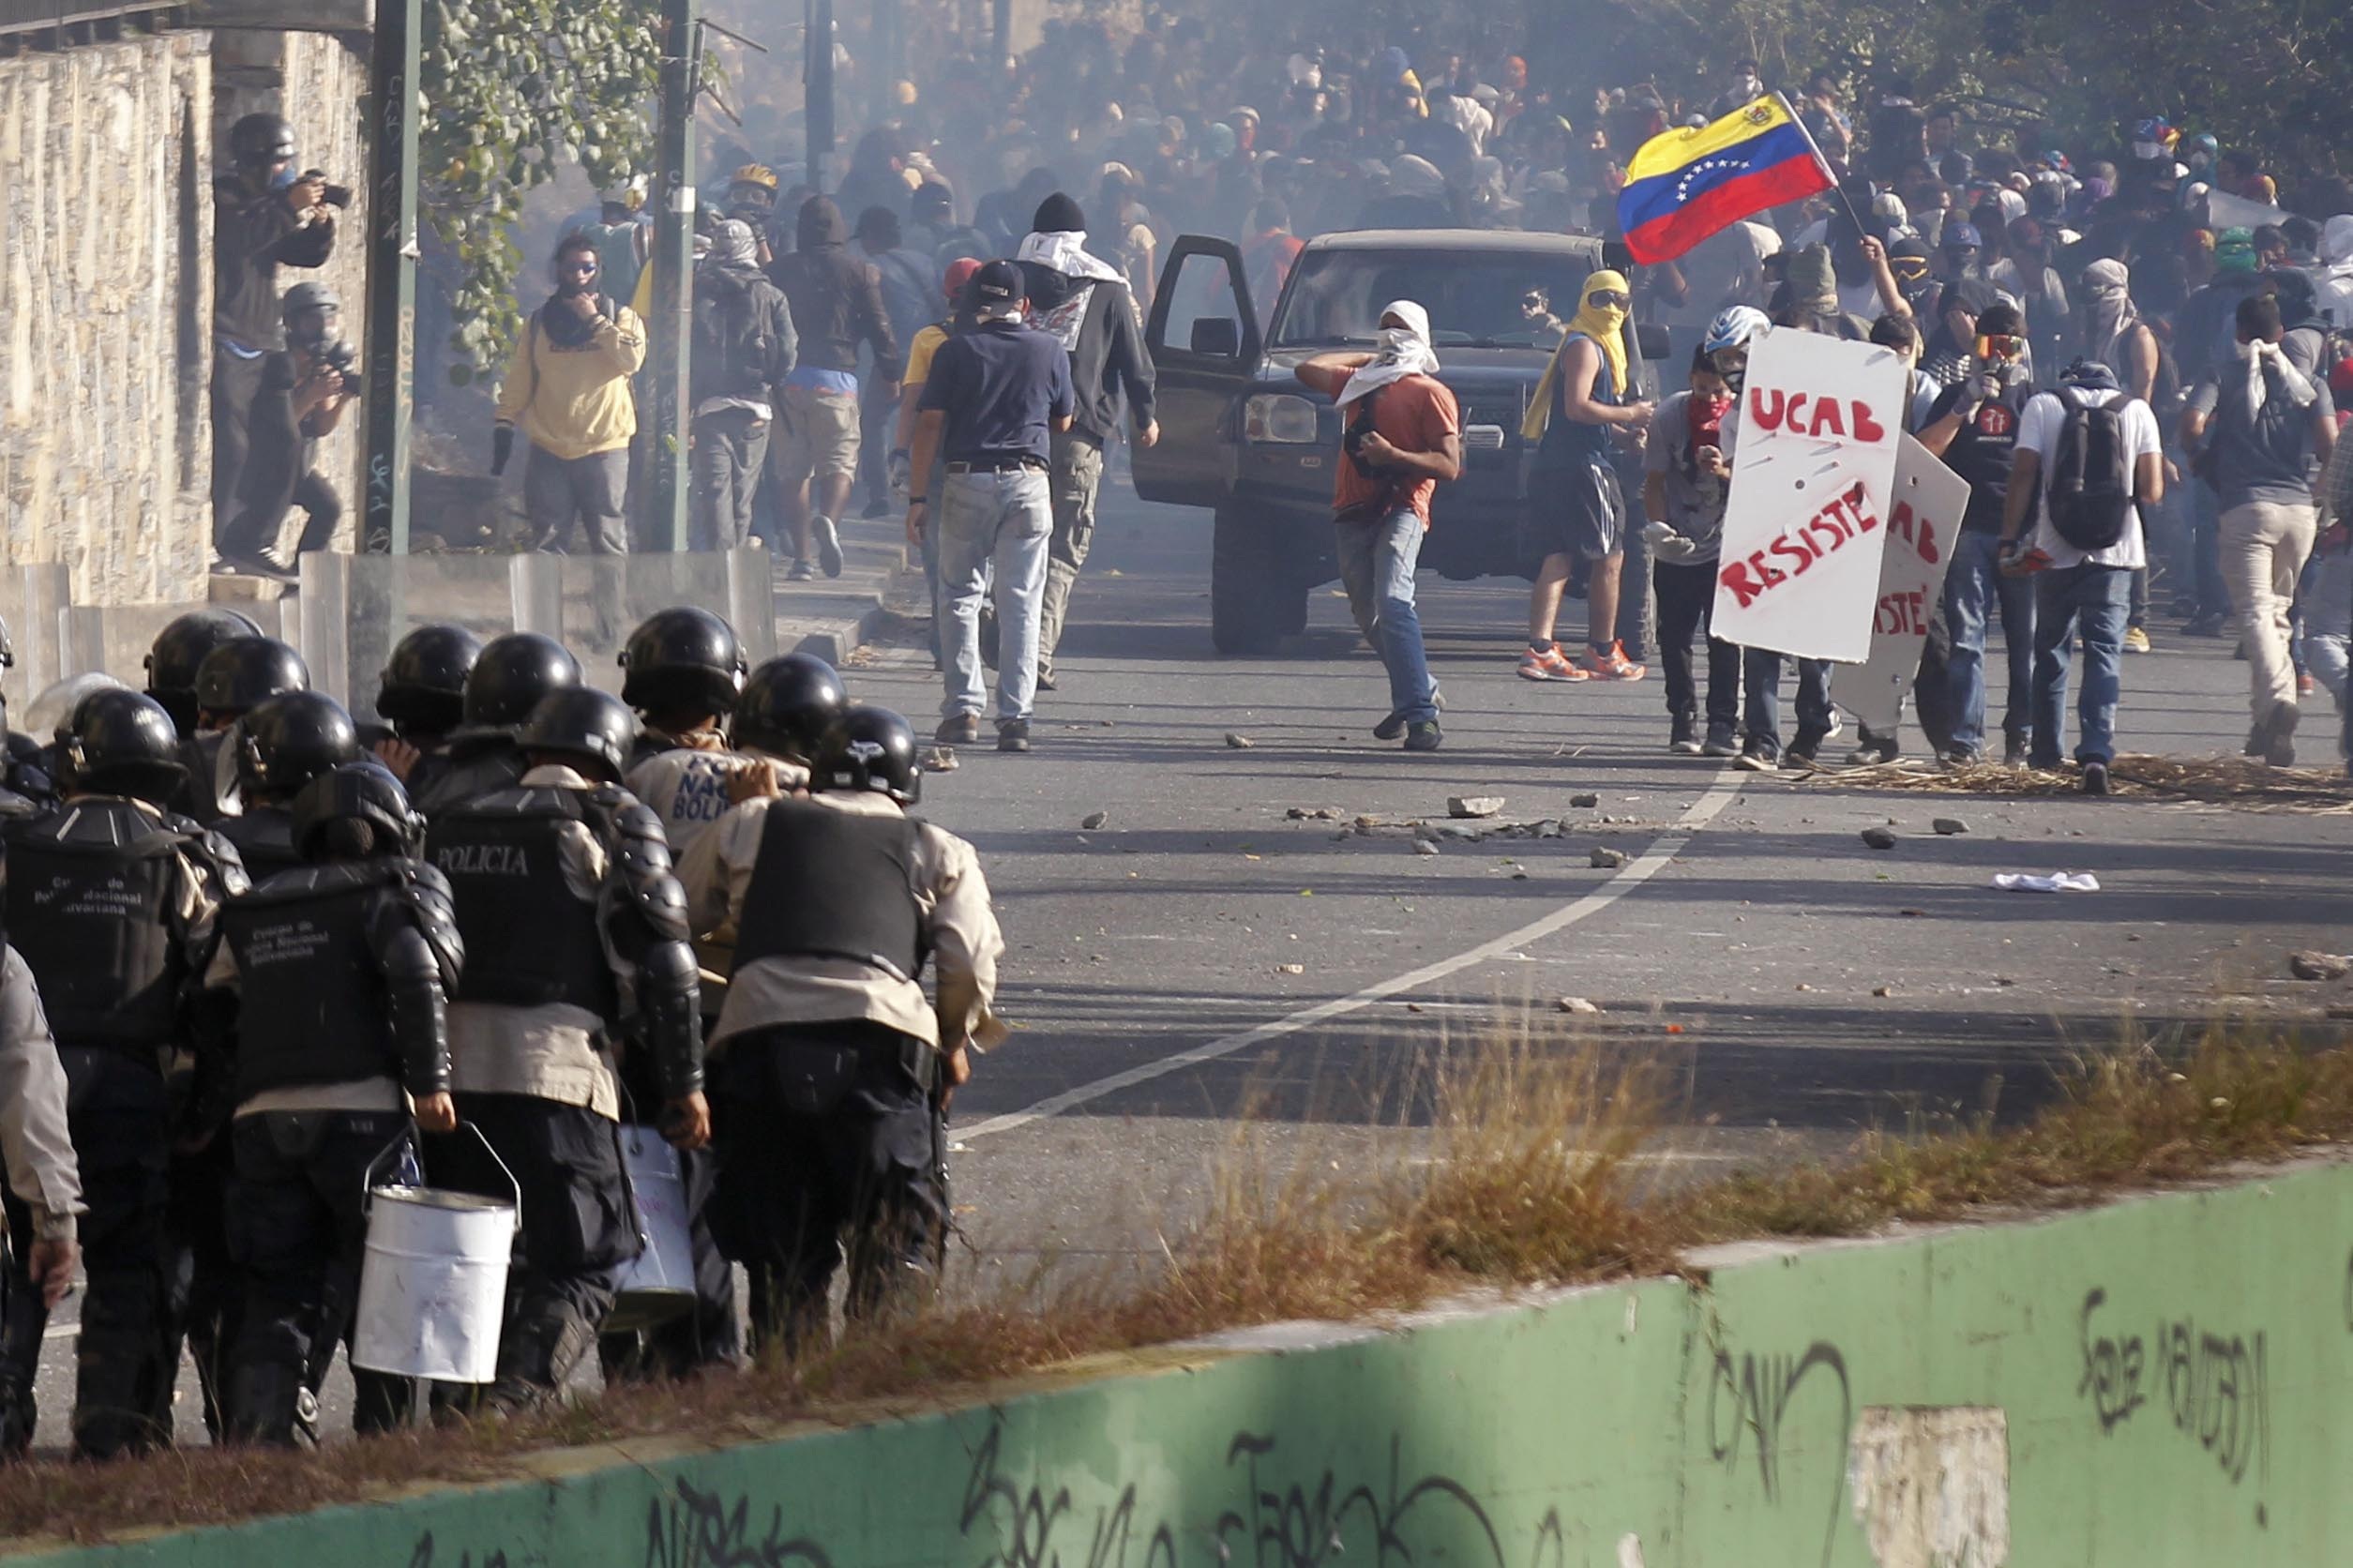 Alcaldes tras las rejas, protestas y más confrontación en Venezuela